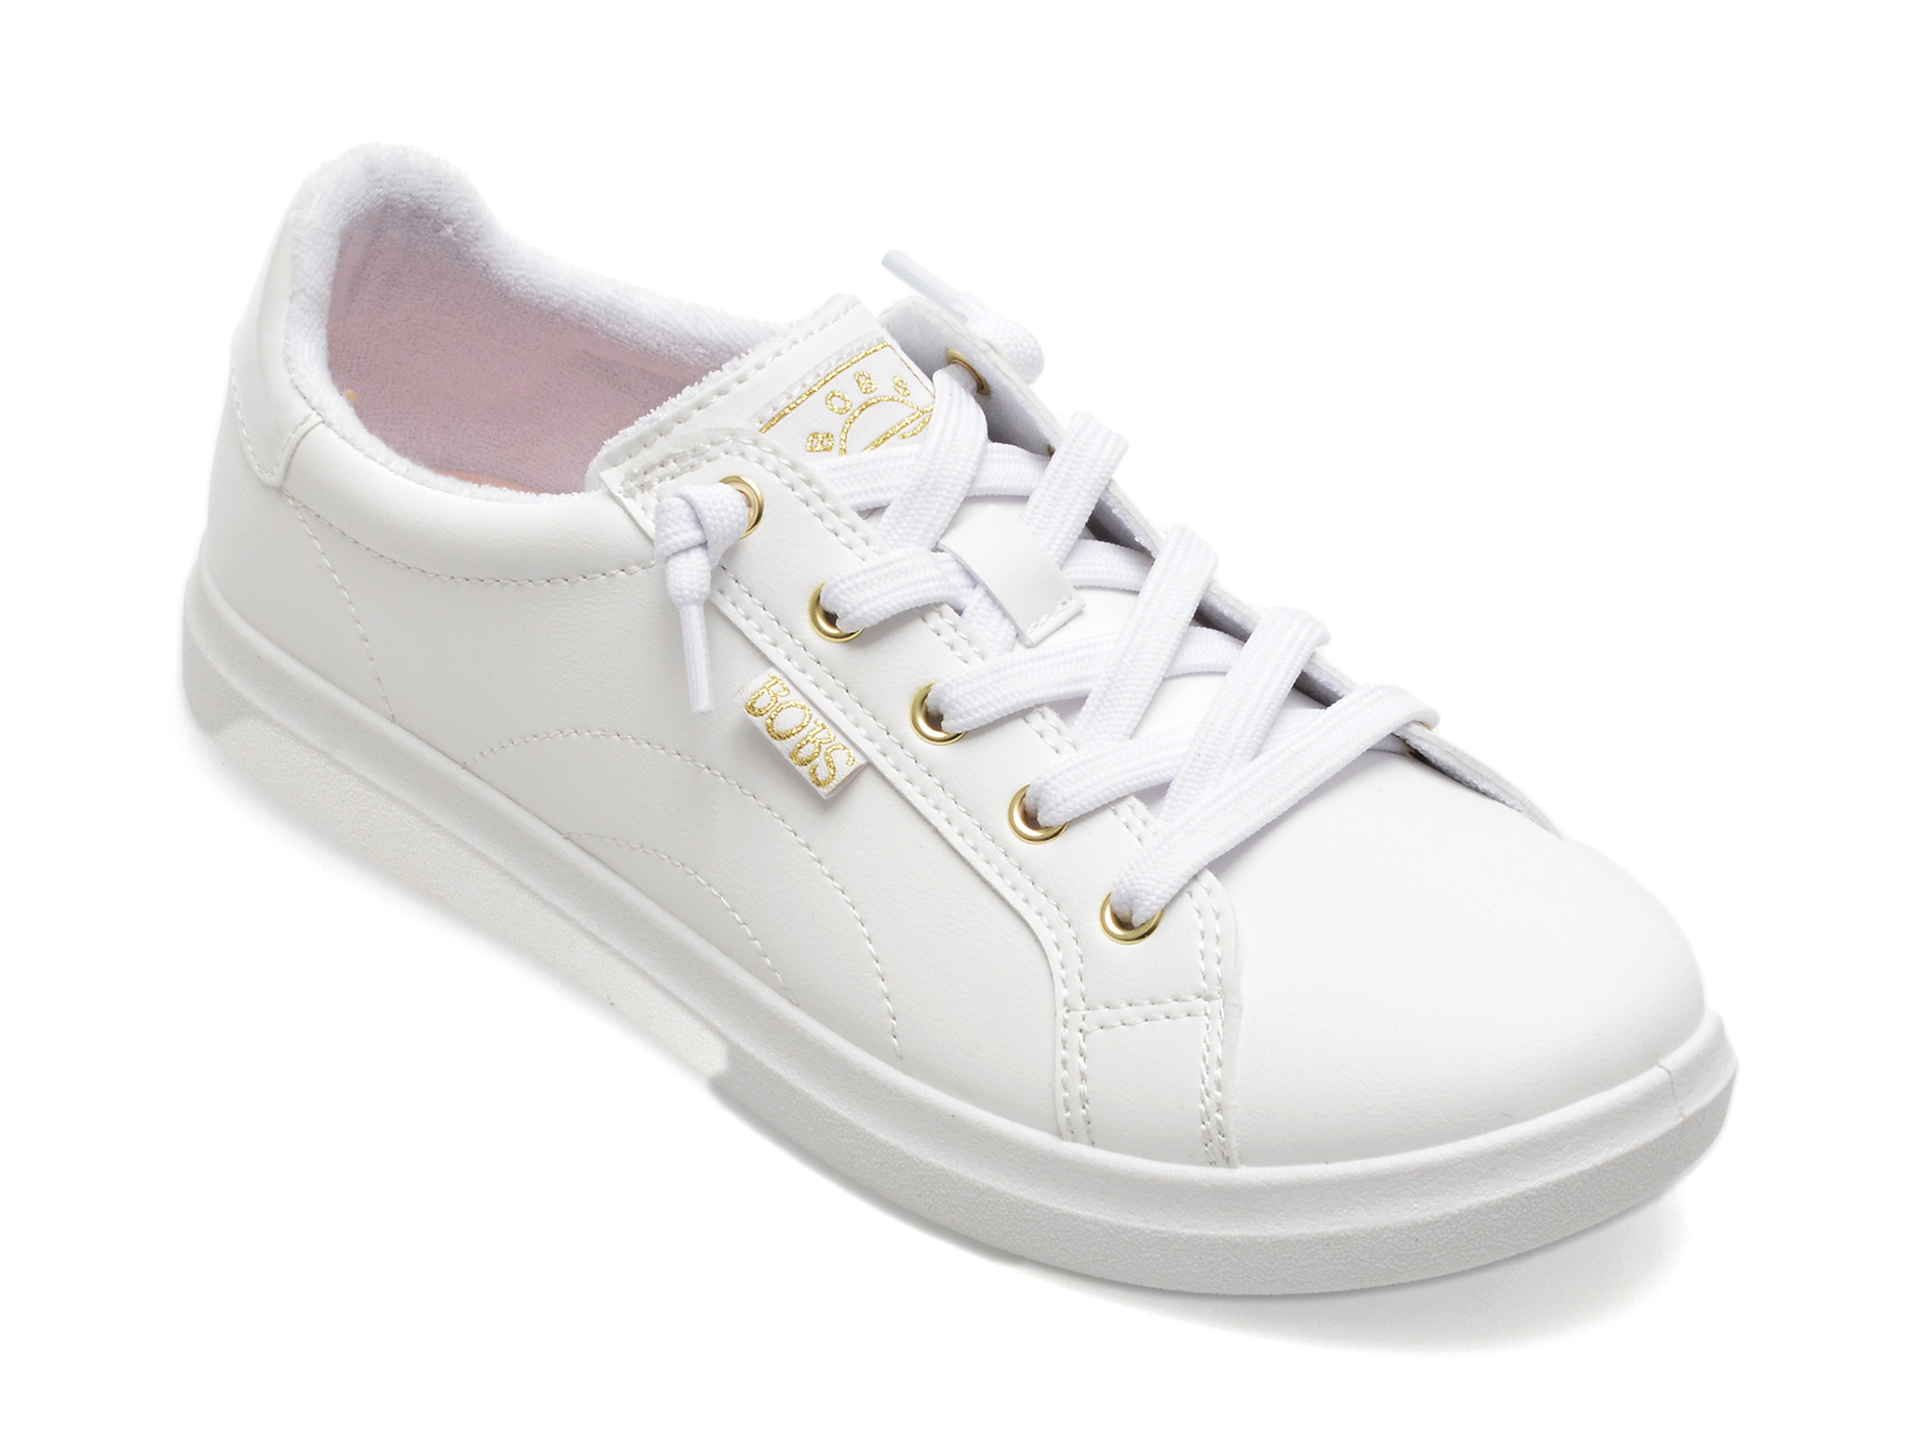 Pantofi SKECHERS albi, BOBS D VINE, din piele ecologica femei 2023-09-21